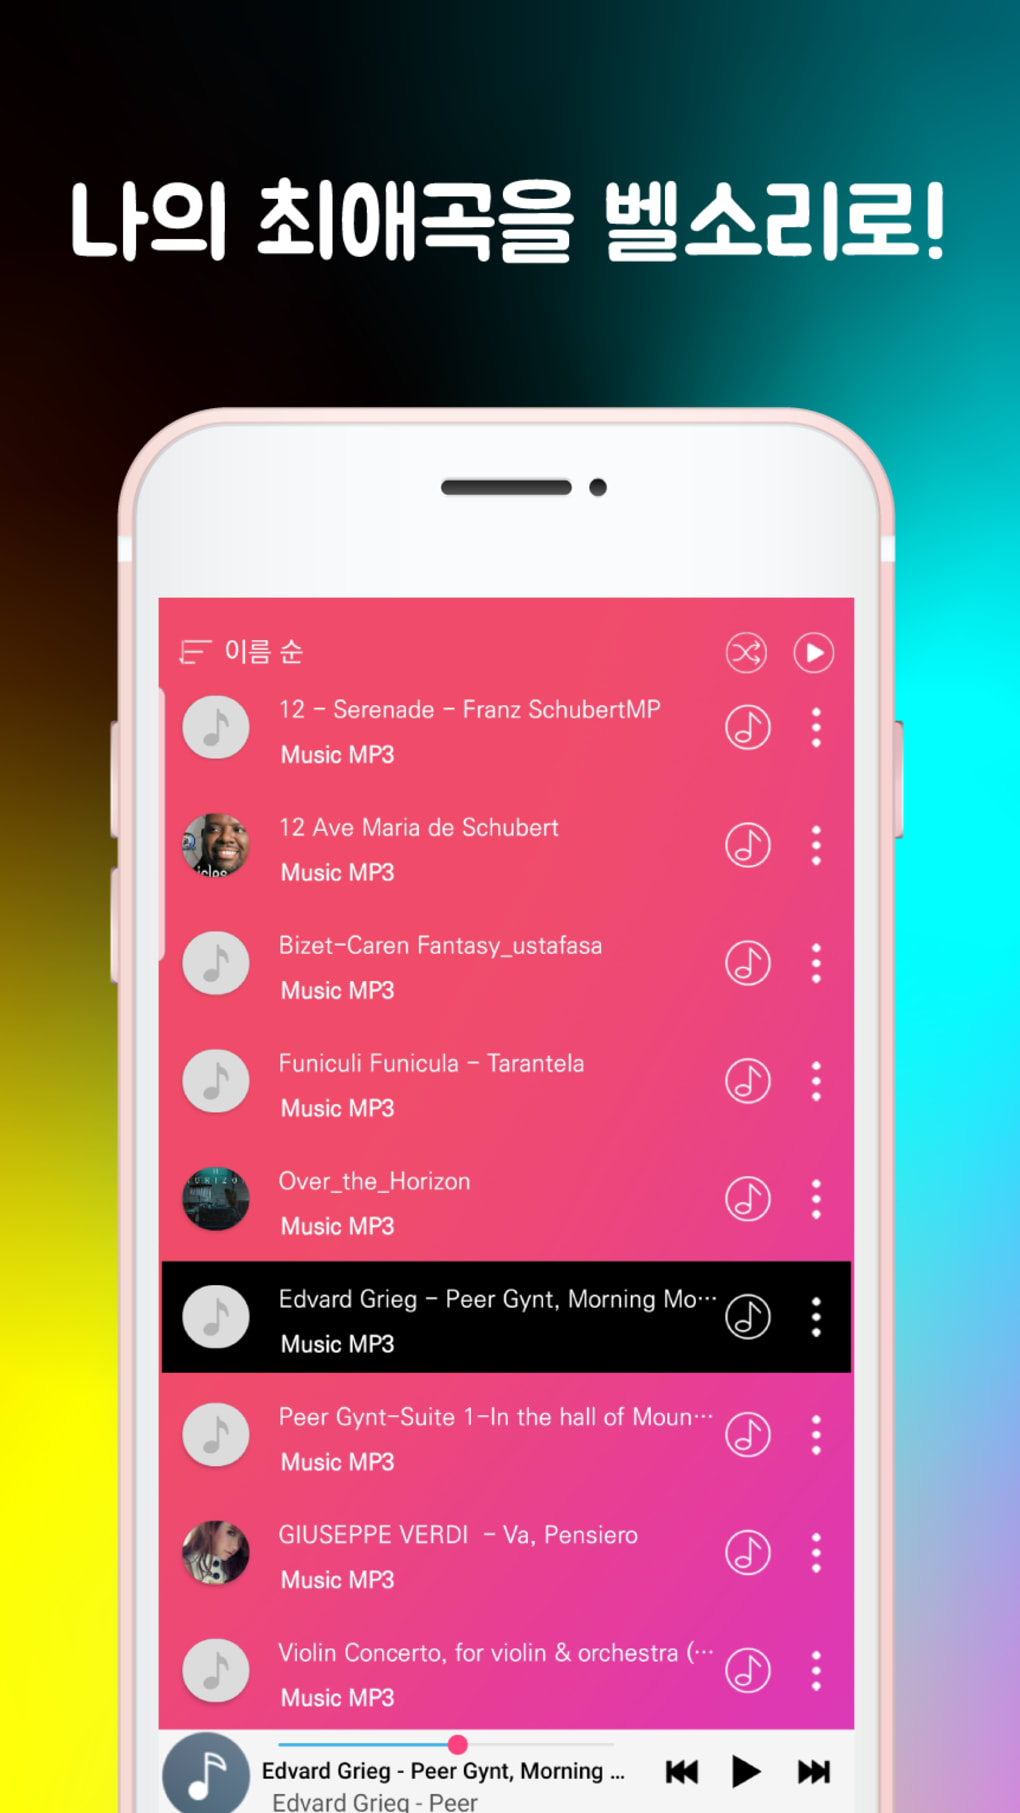 Android 용 벨소리무료다운 - 벨소리메이커 벨소리만들기 최신음악 무료다운 컬러링 Mp3 음악다운로드 - 다운로드